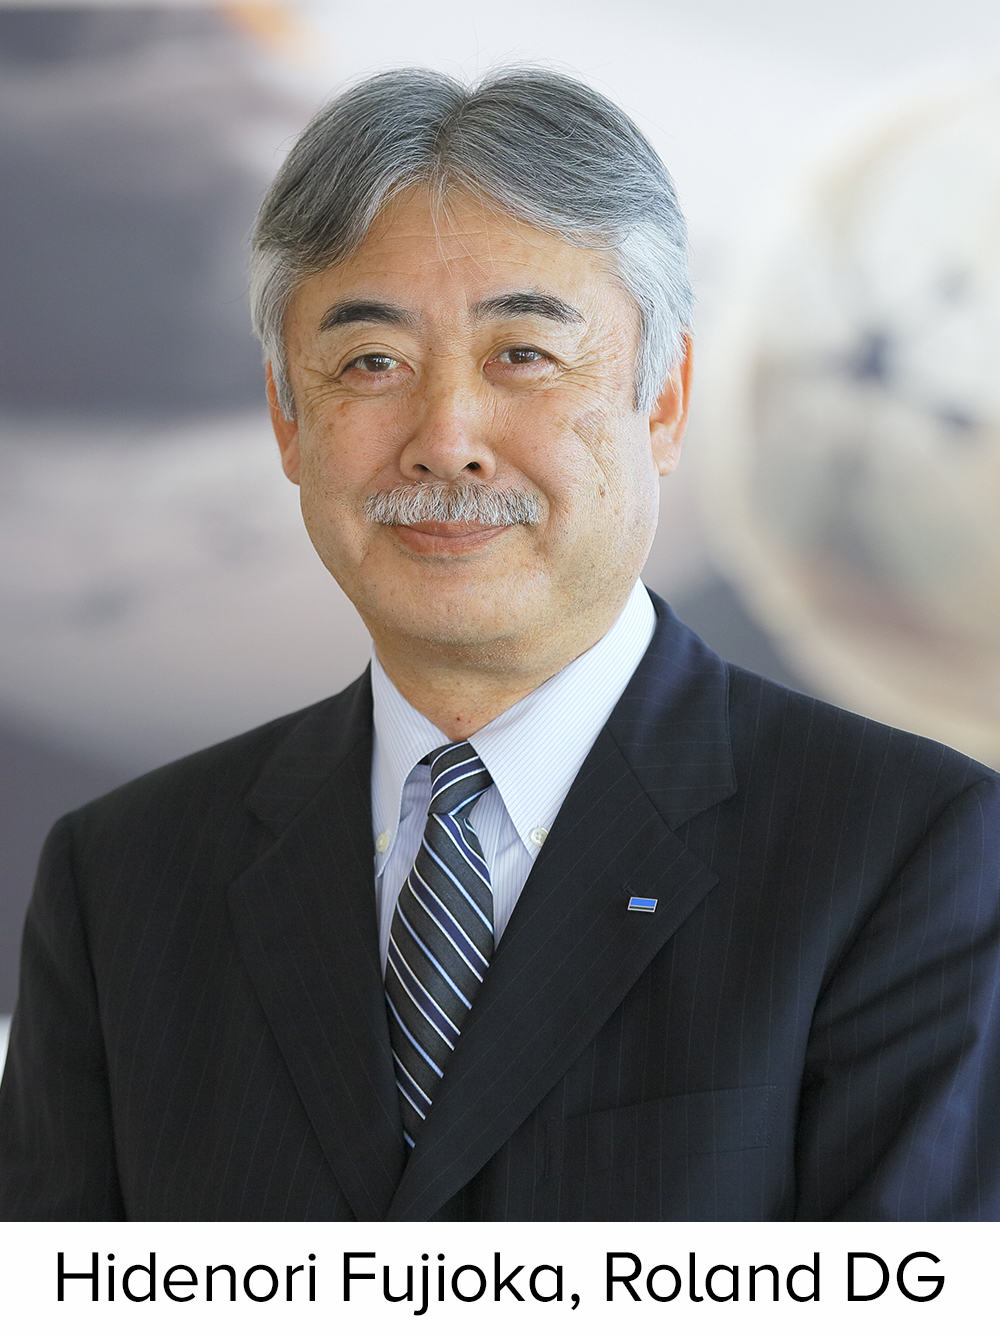 Roland DG Hidenori Fujioka